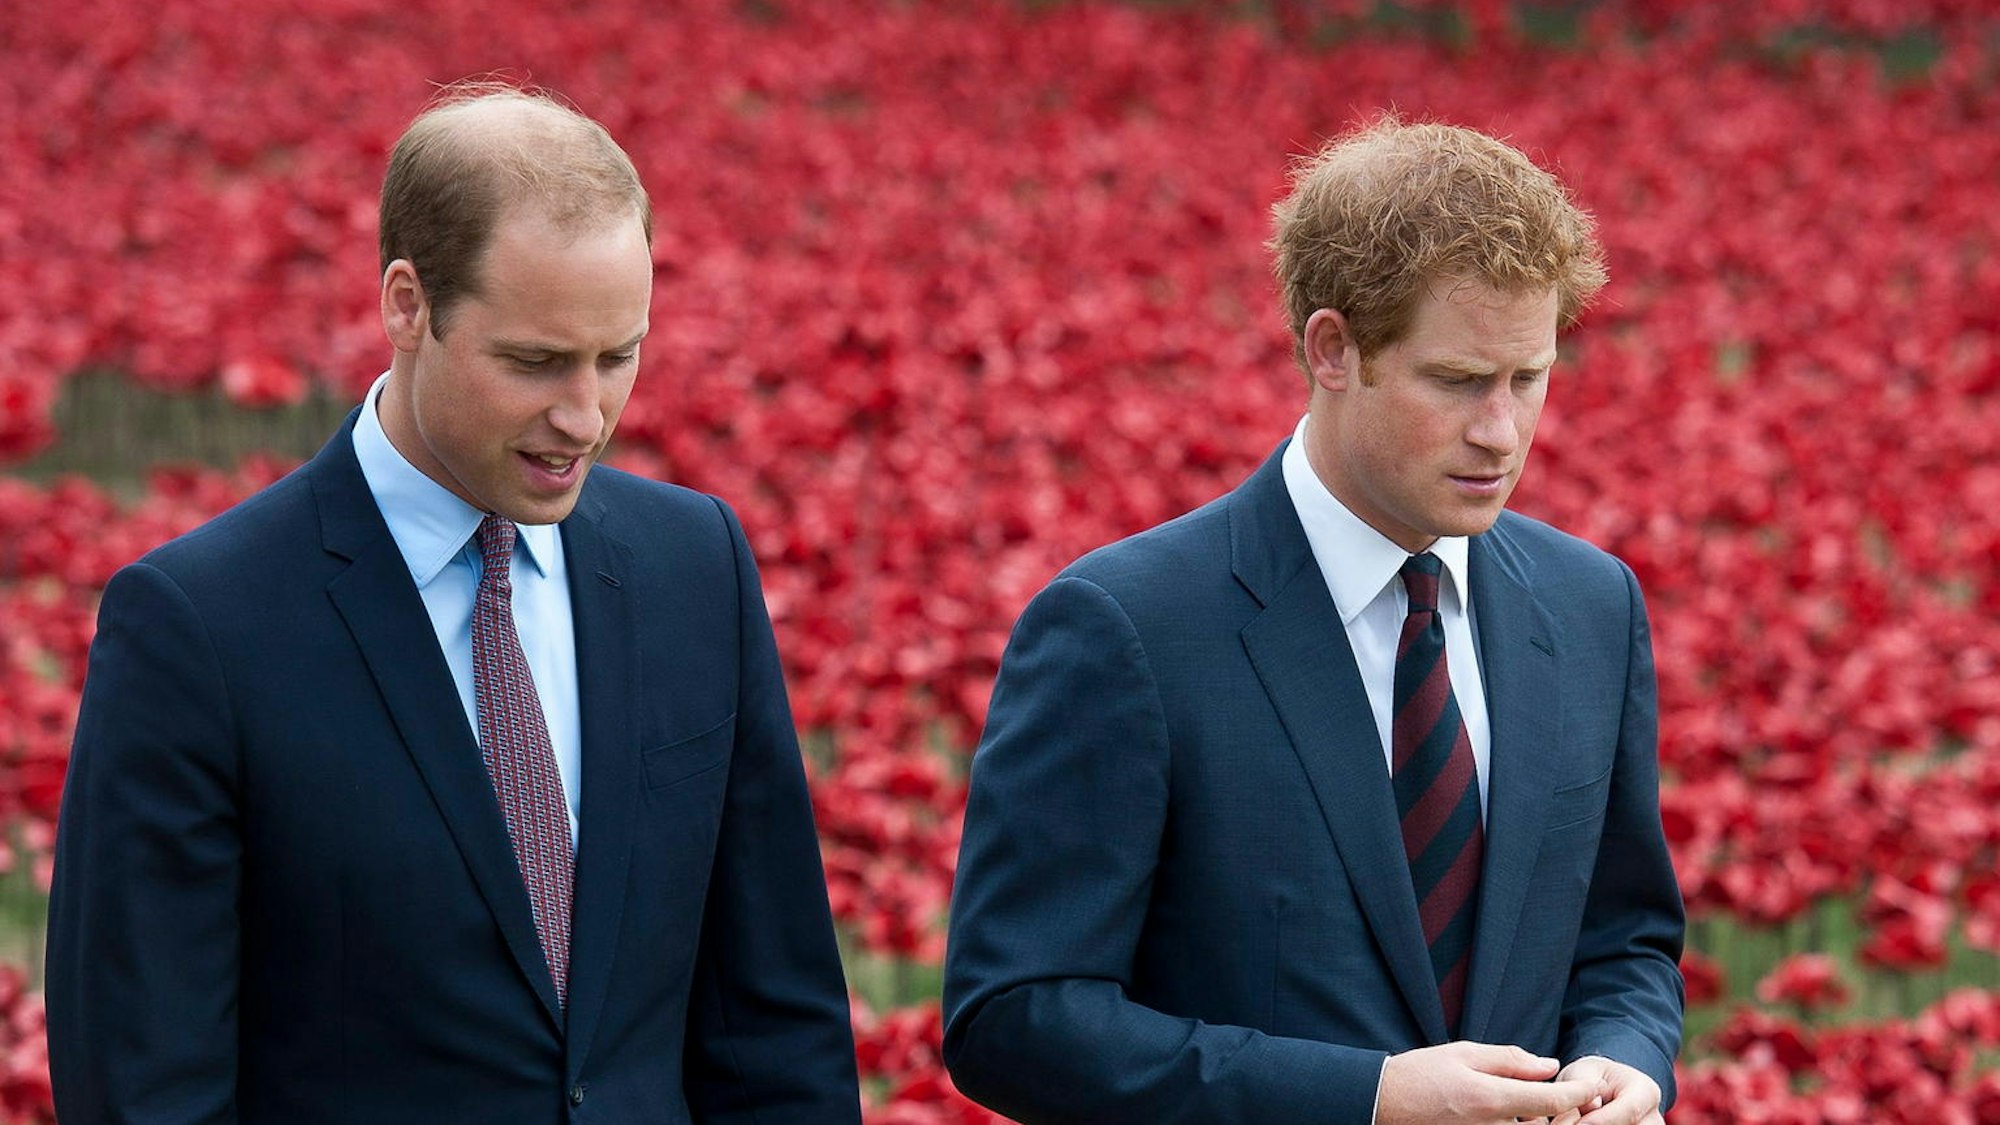 Prinz William und Prinz Harry vor einem Feld mit roten Tulpen.